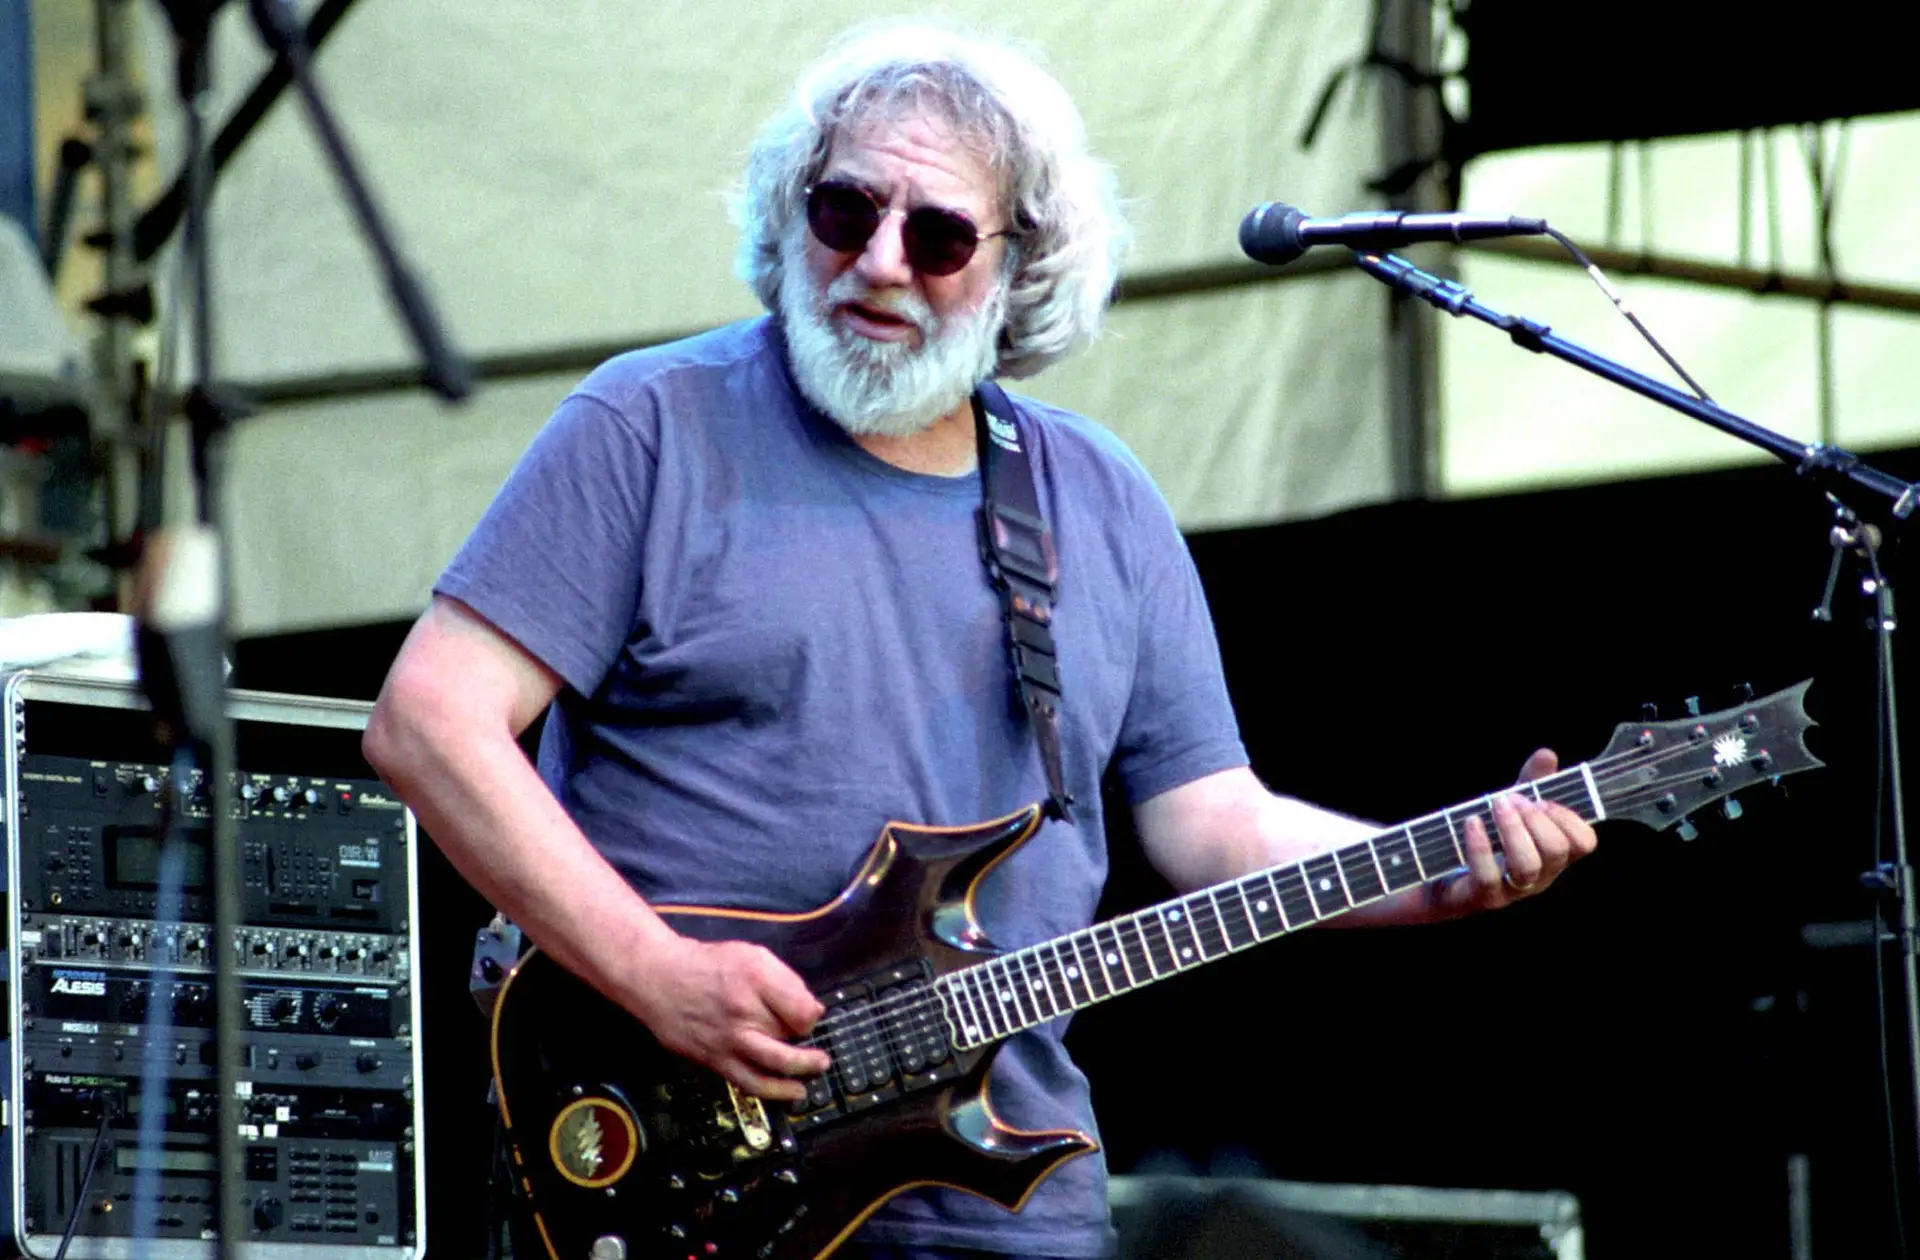 Passados 30 anos, encontraram o cachimbo de Jerry Garcia dos Grateful Dead. Ainda cheira a erva